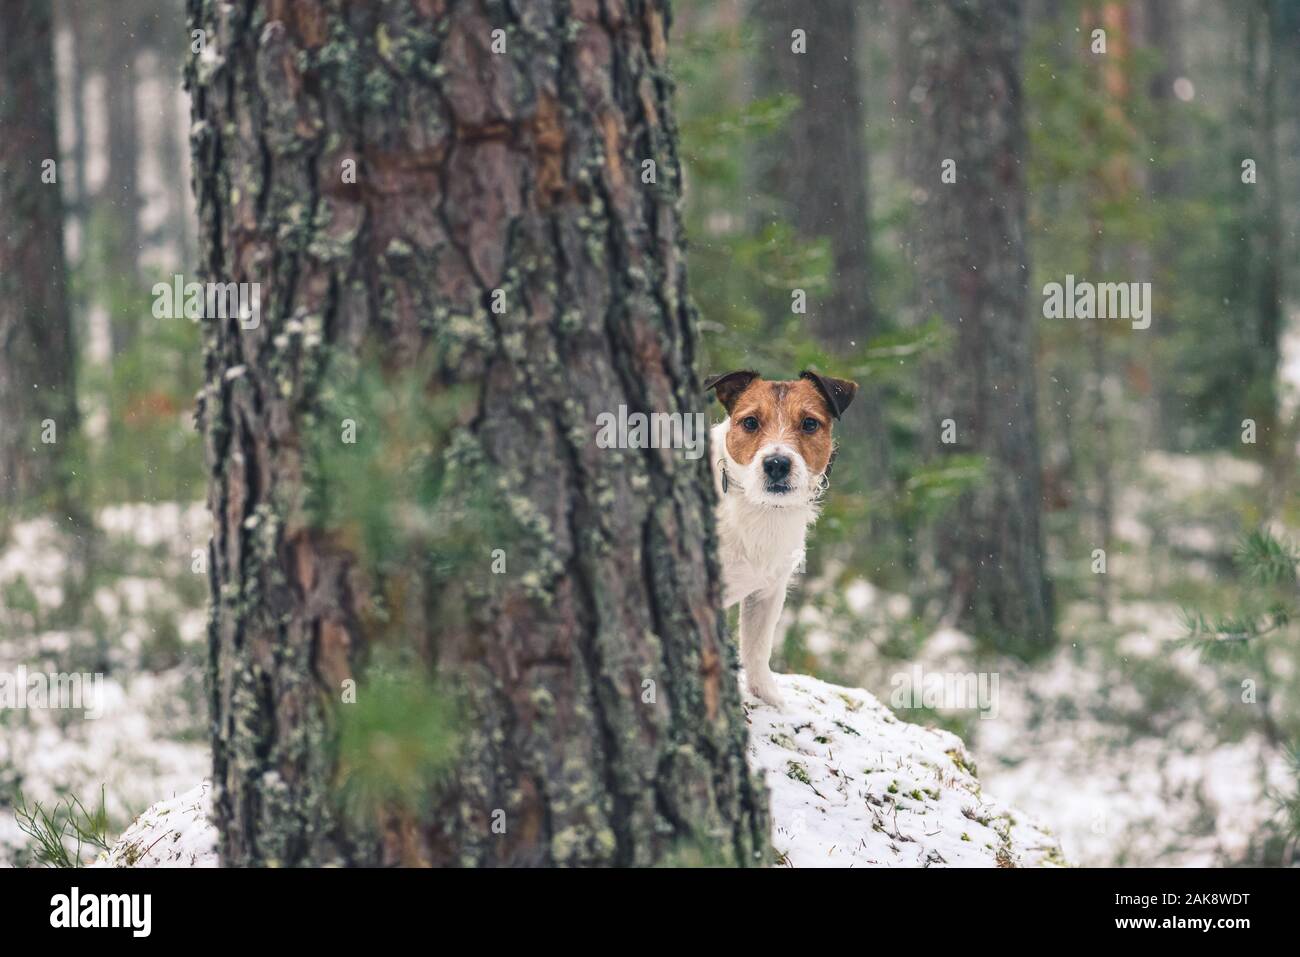 Promenade de chiens dans la nature sauvage de jouer à cache-cache derrière tree Banque D'Images